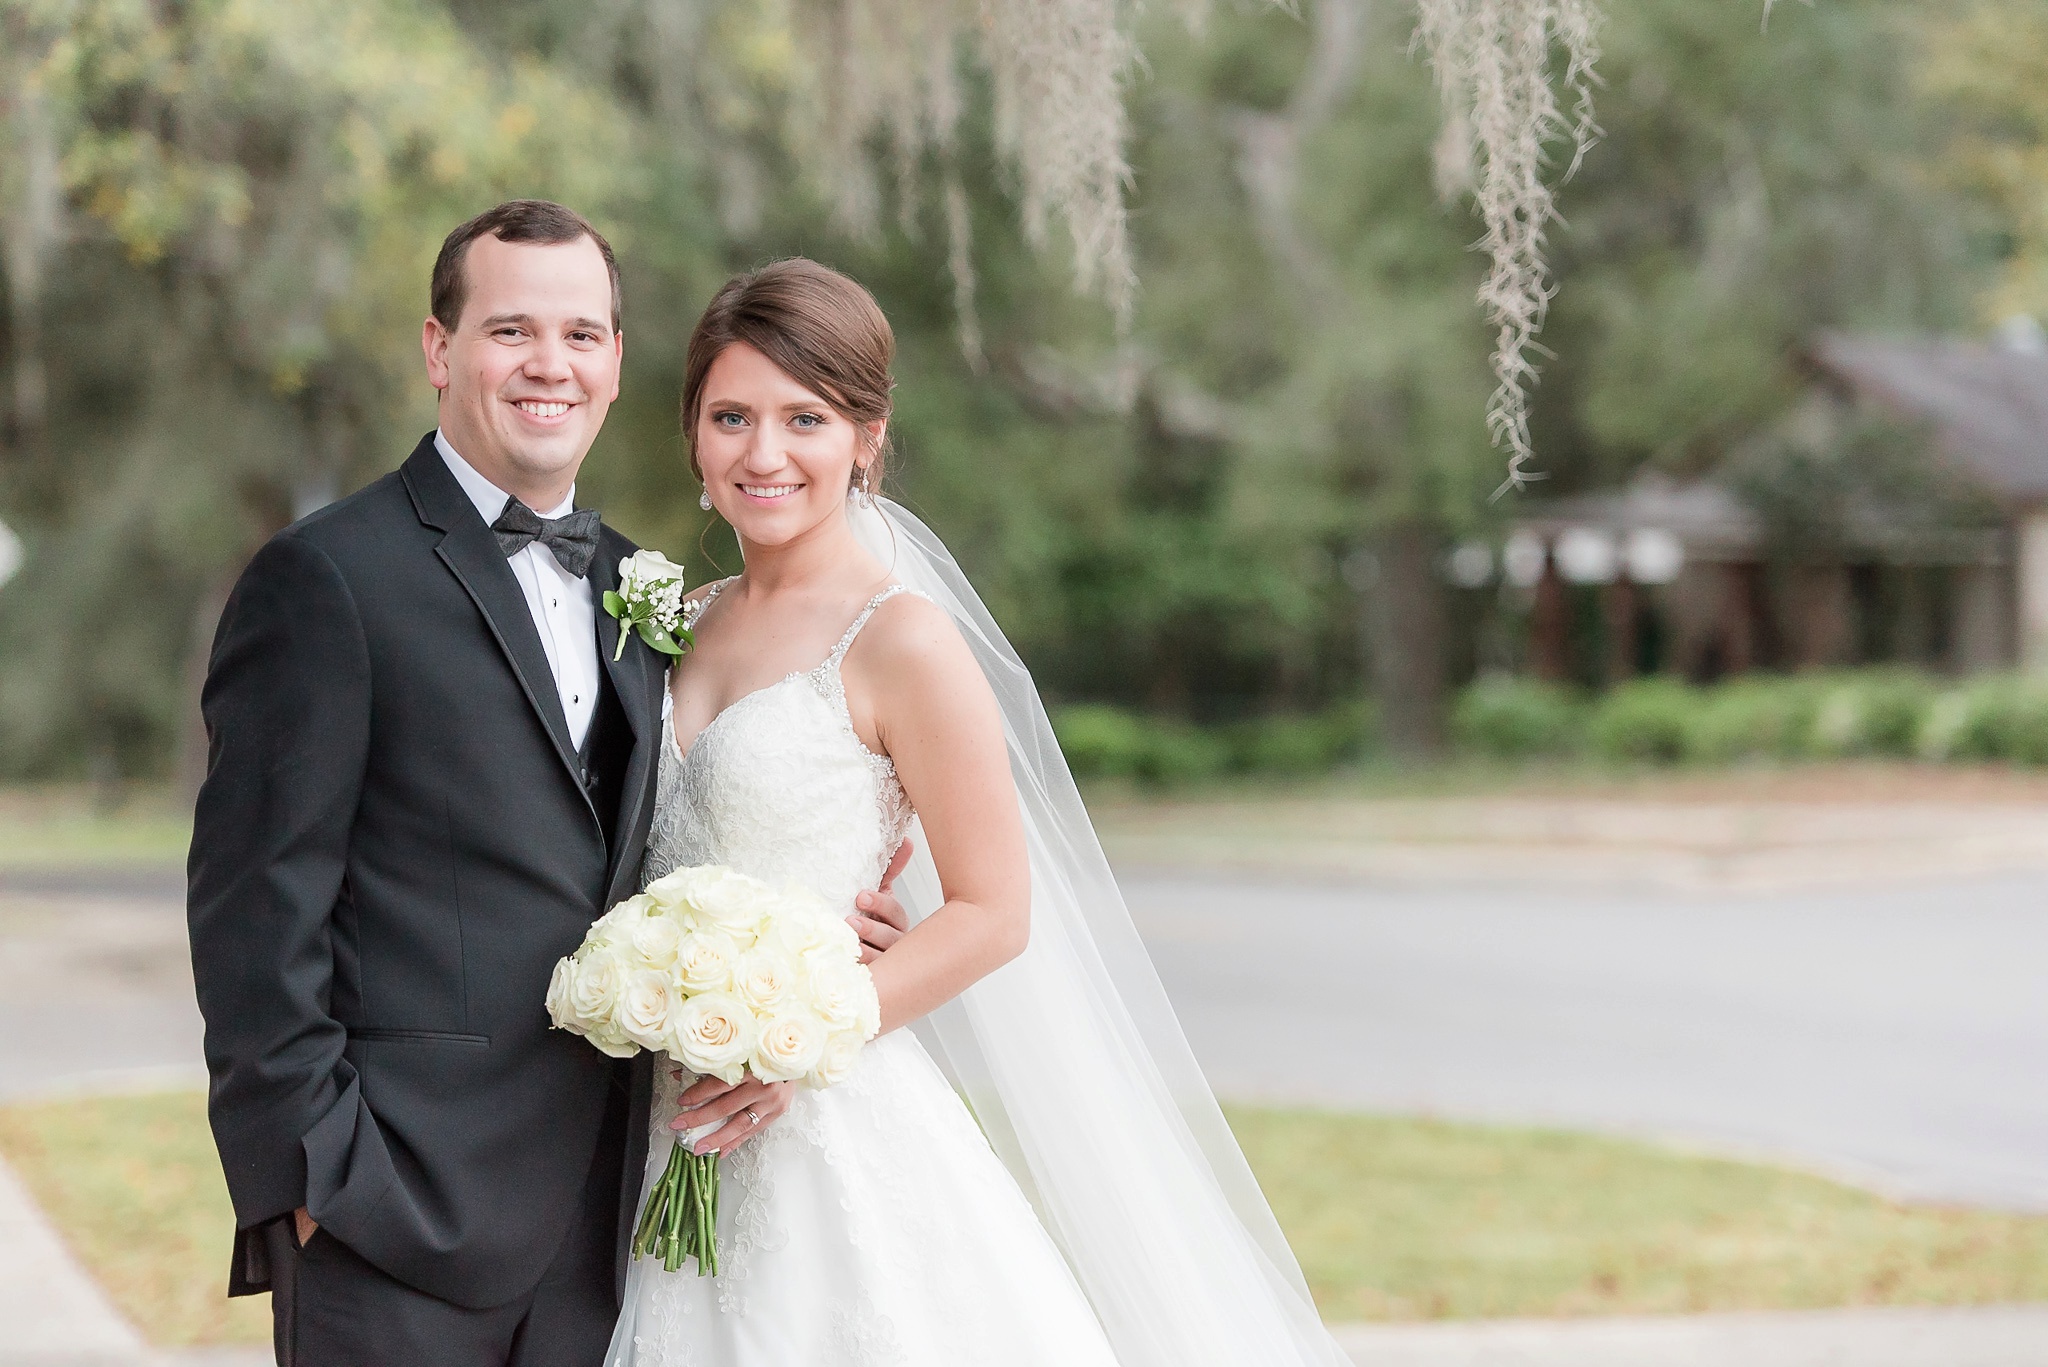 Niceville Destin Florida Wedding | Birmingham Alabama Wedding Photographers_0034.jpg